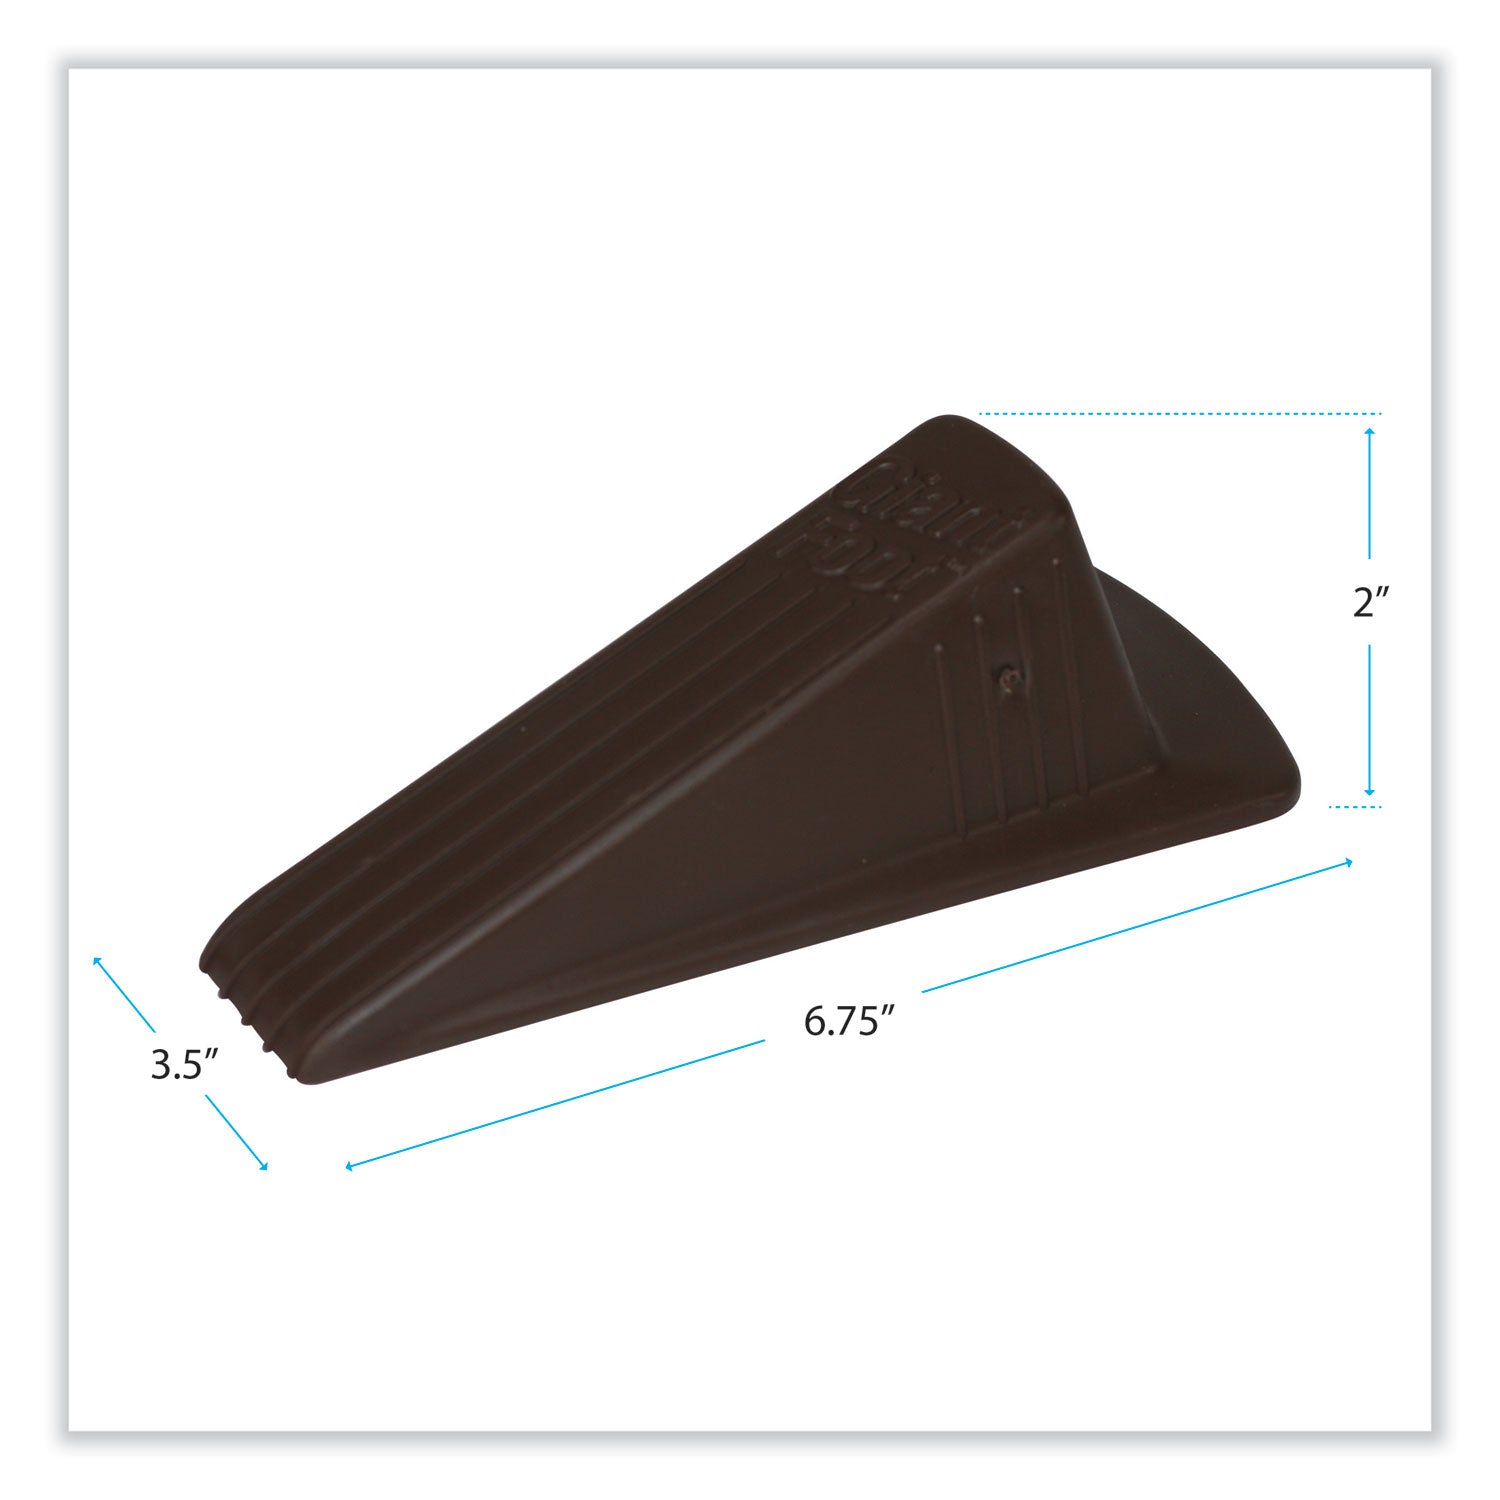 Giant Foot Doorstop, No-Slip Rubber Wedge, 3.5w x 6.75d x 2h, Brown, 2/Pack - 